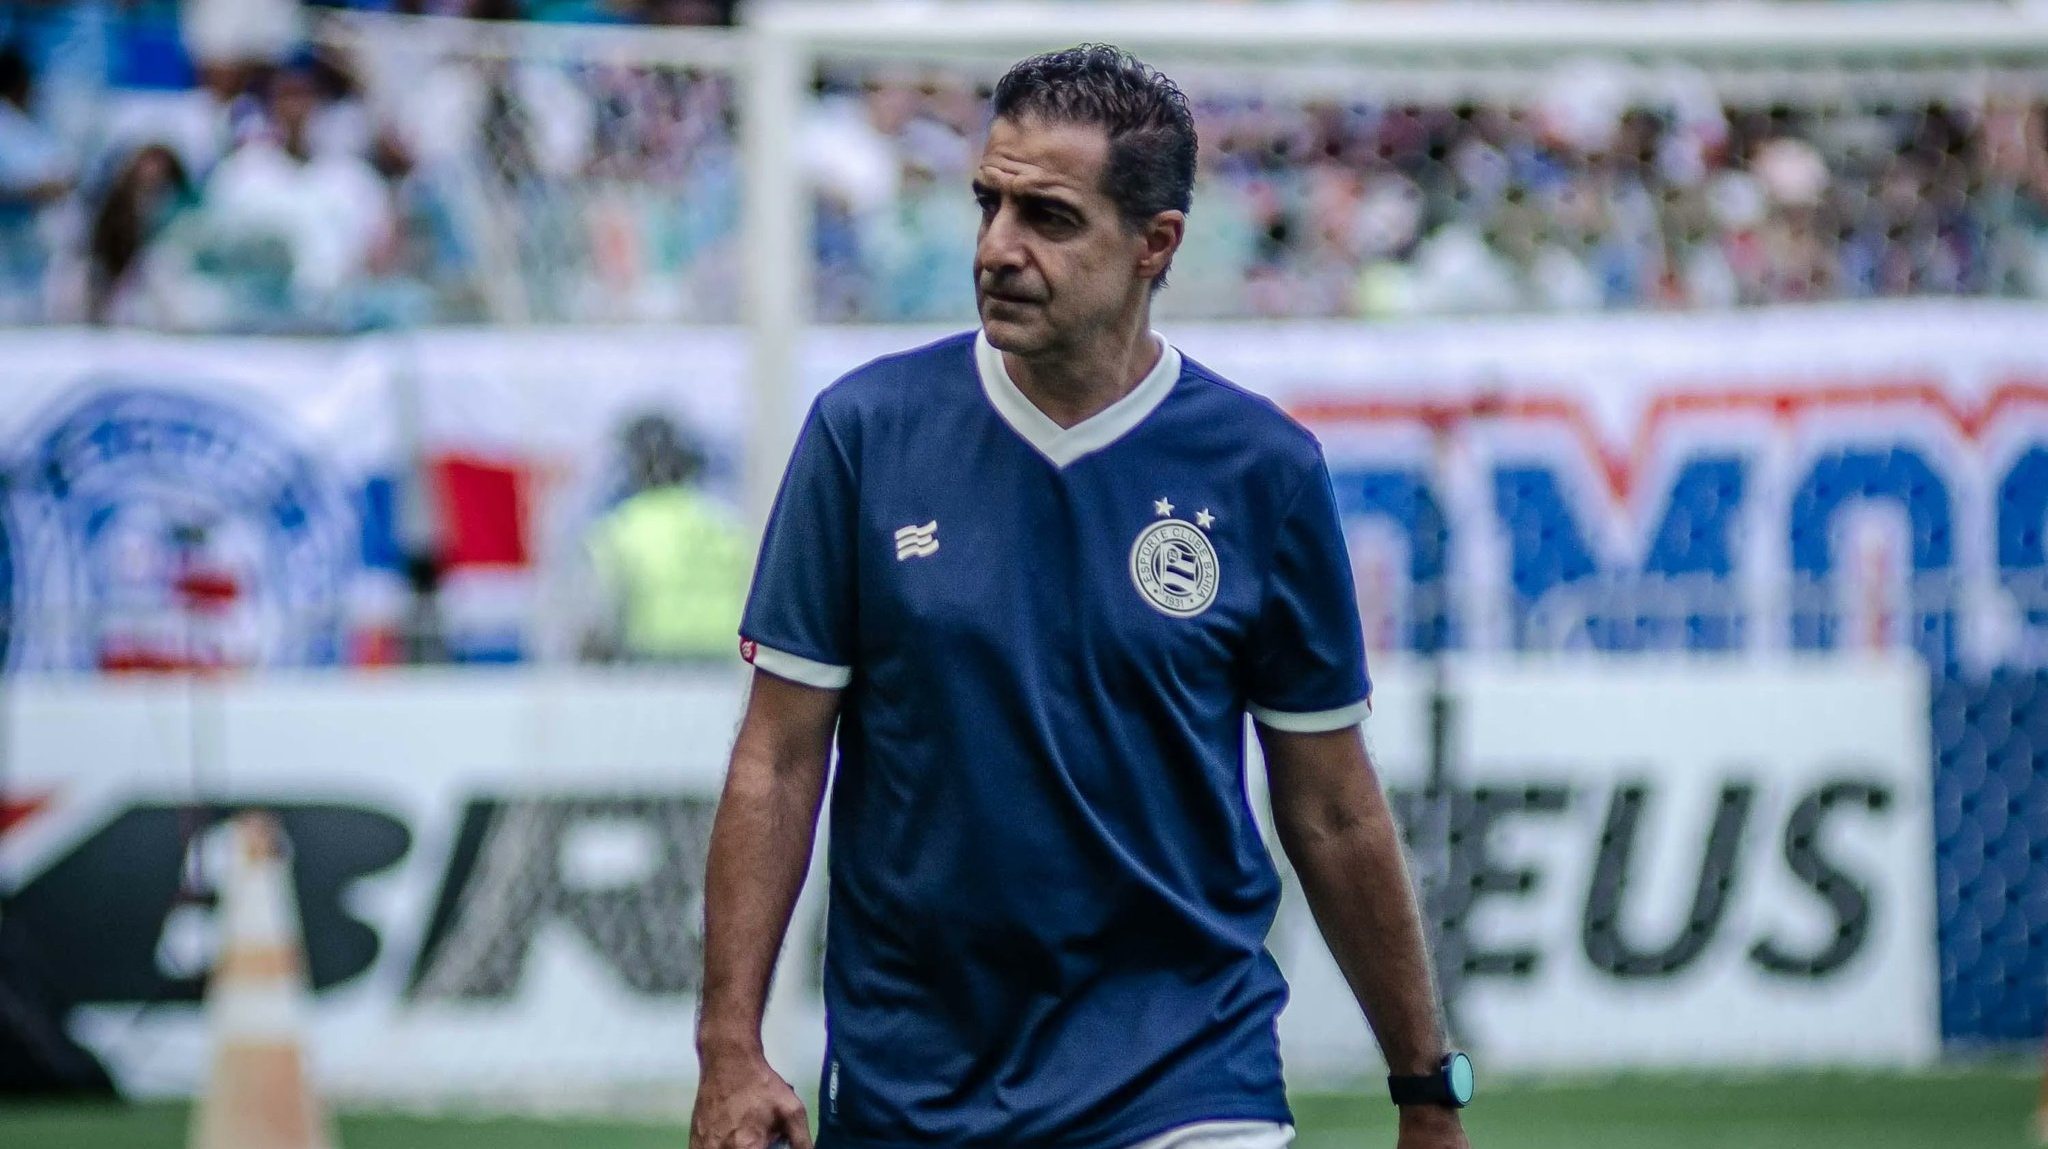 Neto provoca Palmeiras após derrota no Mundial: 'Nunca serão?